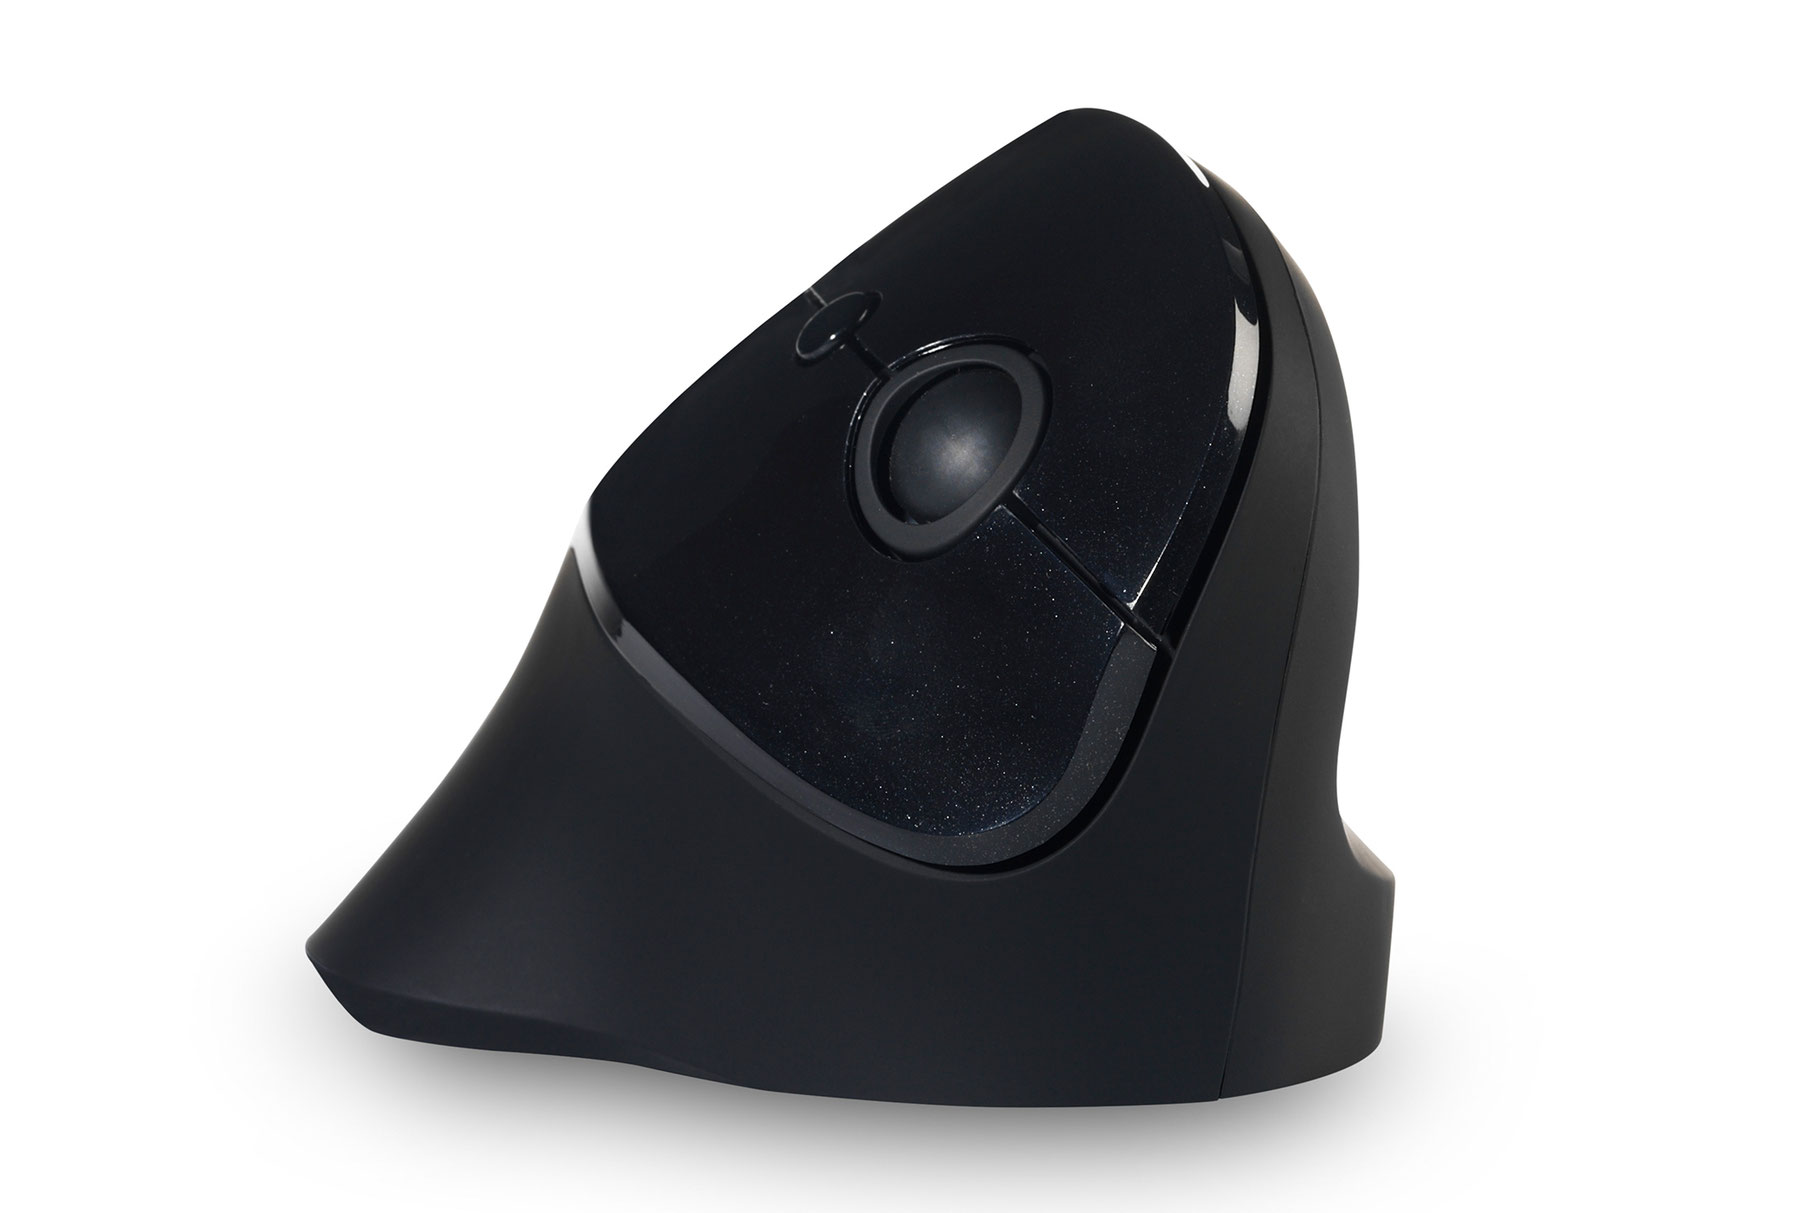 souris Verticale - PRF Mouse sans fil - Souris Ergonomique -   - Matériel et accessoires de bureaux ergonomiques